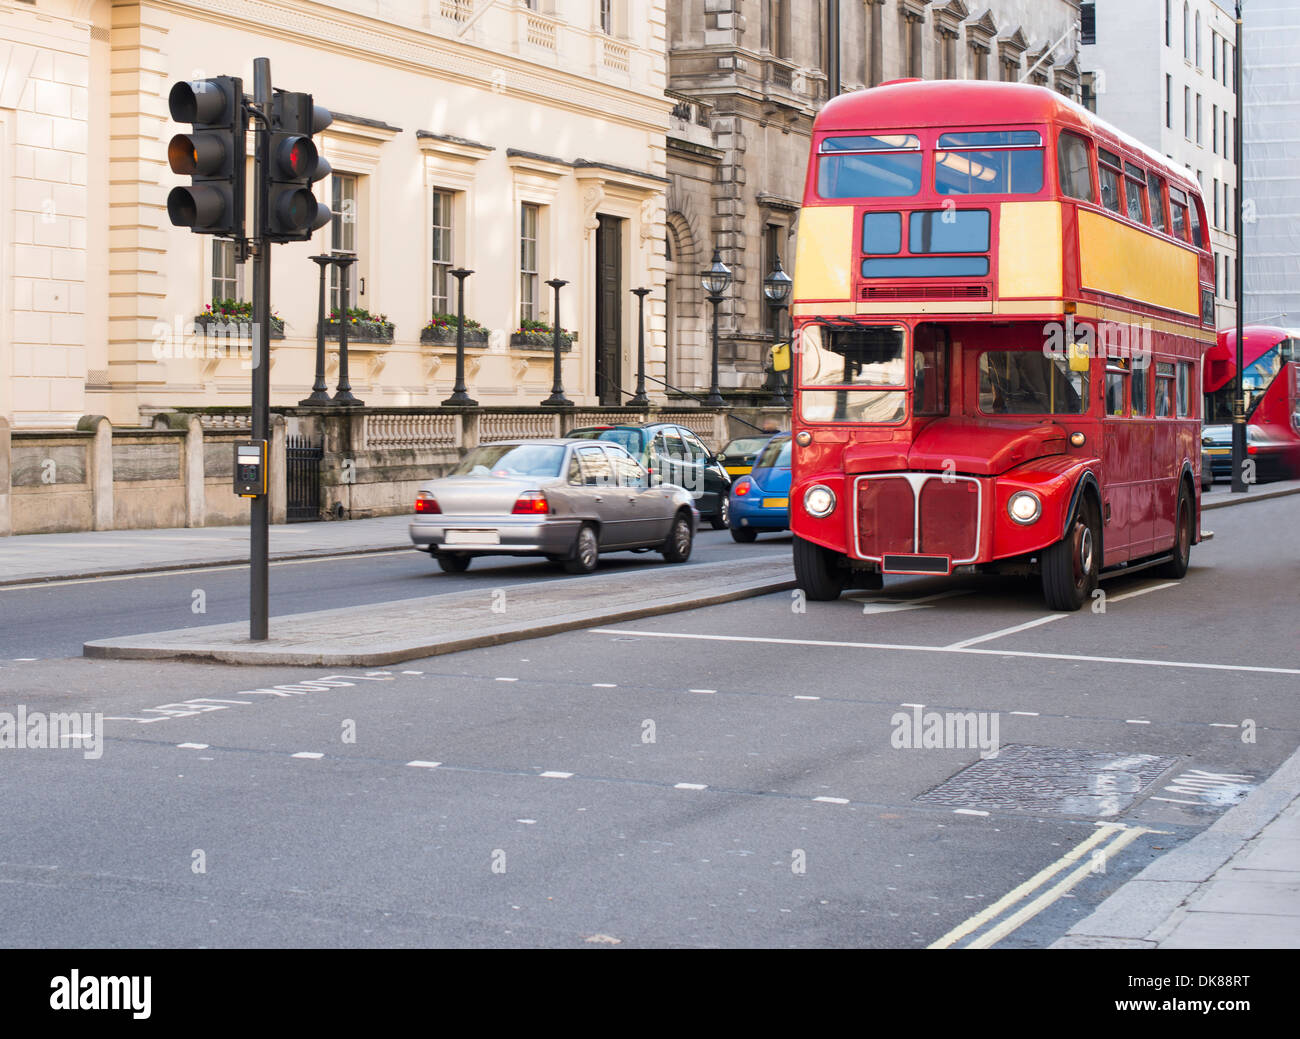 Red bus d'époque à Londres. Visite de la ville de Londres Banque D'Images